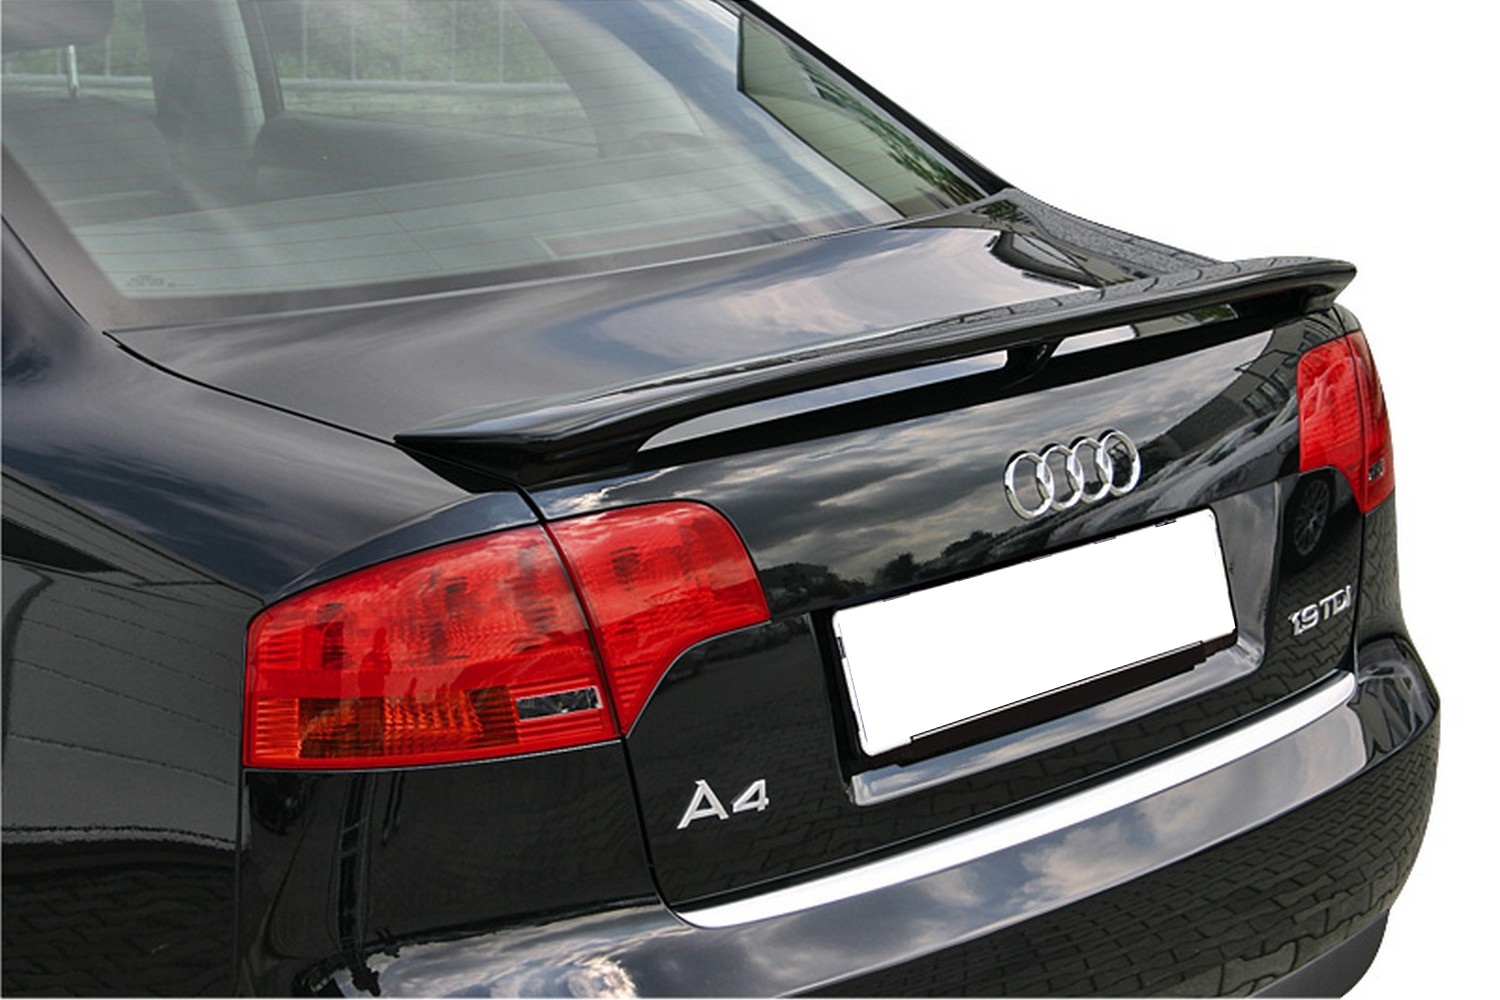 Audi accessoires auto vente d'usine,accessoires d'origine jusqu'à